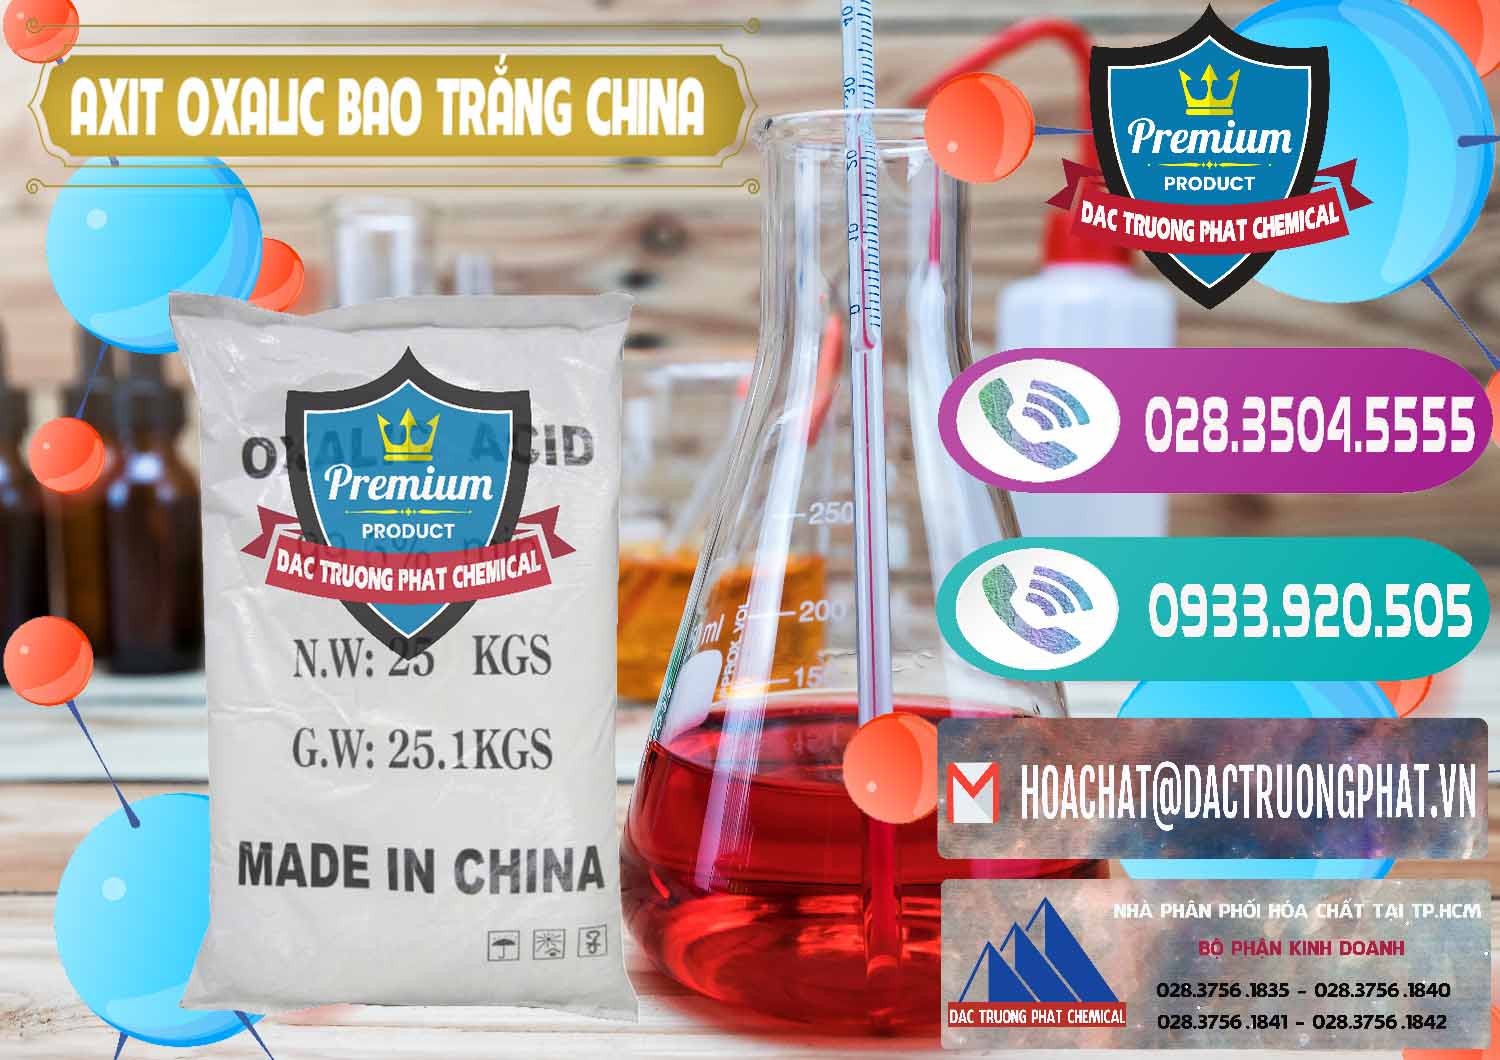 Đơn vị chuyên nhập khẩu và bán Acid Oxalic – Axit Oxalic 99.6% Bao Trắng Trung Quốc China - 0270 - Chuyên cung cấp _ phân phối hóa chất tại TP.HCM - hoachatxulynuoc.com